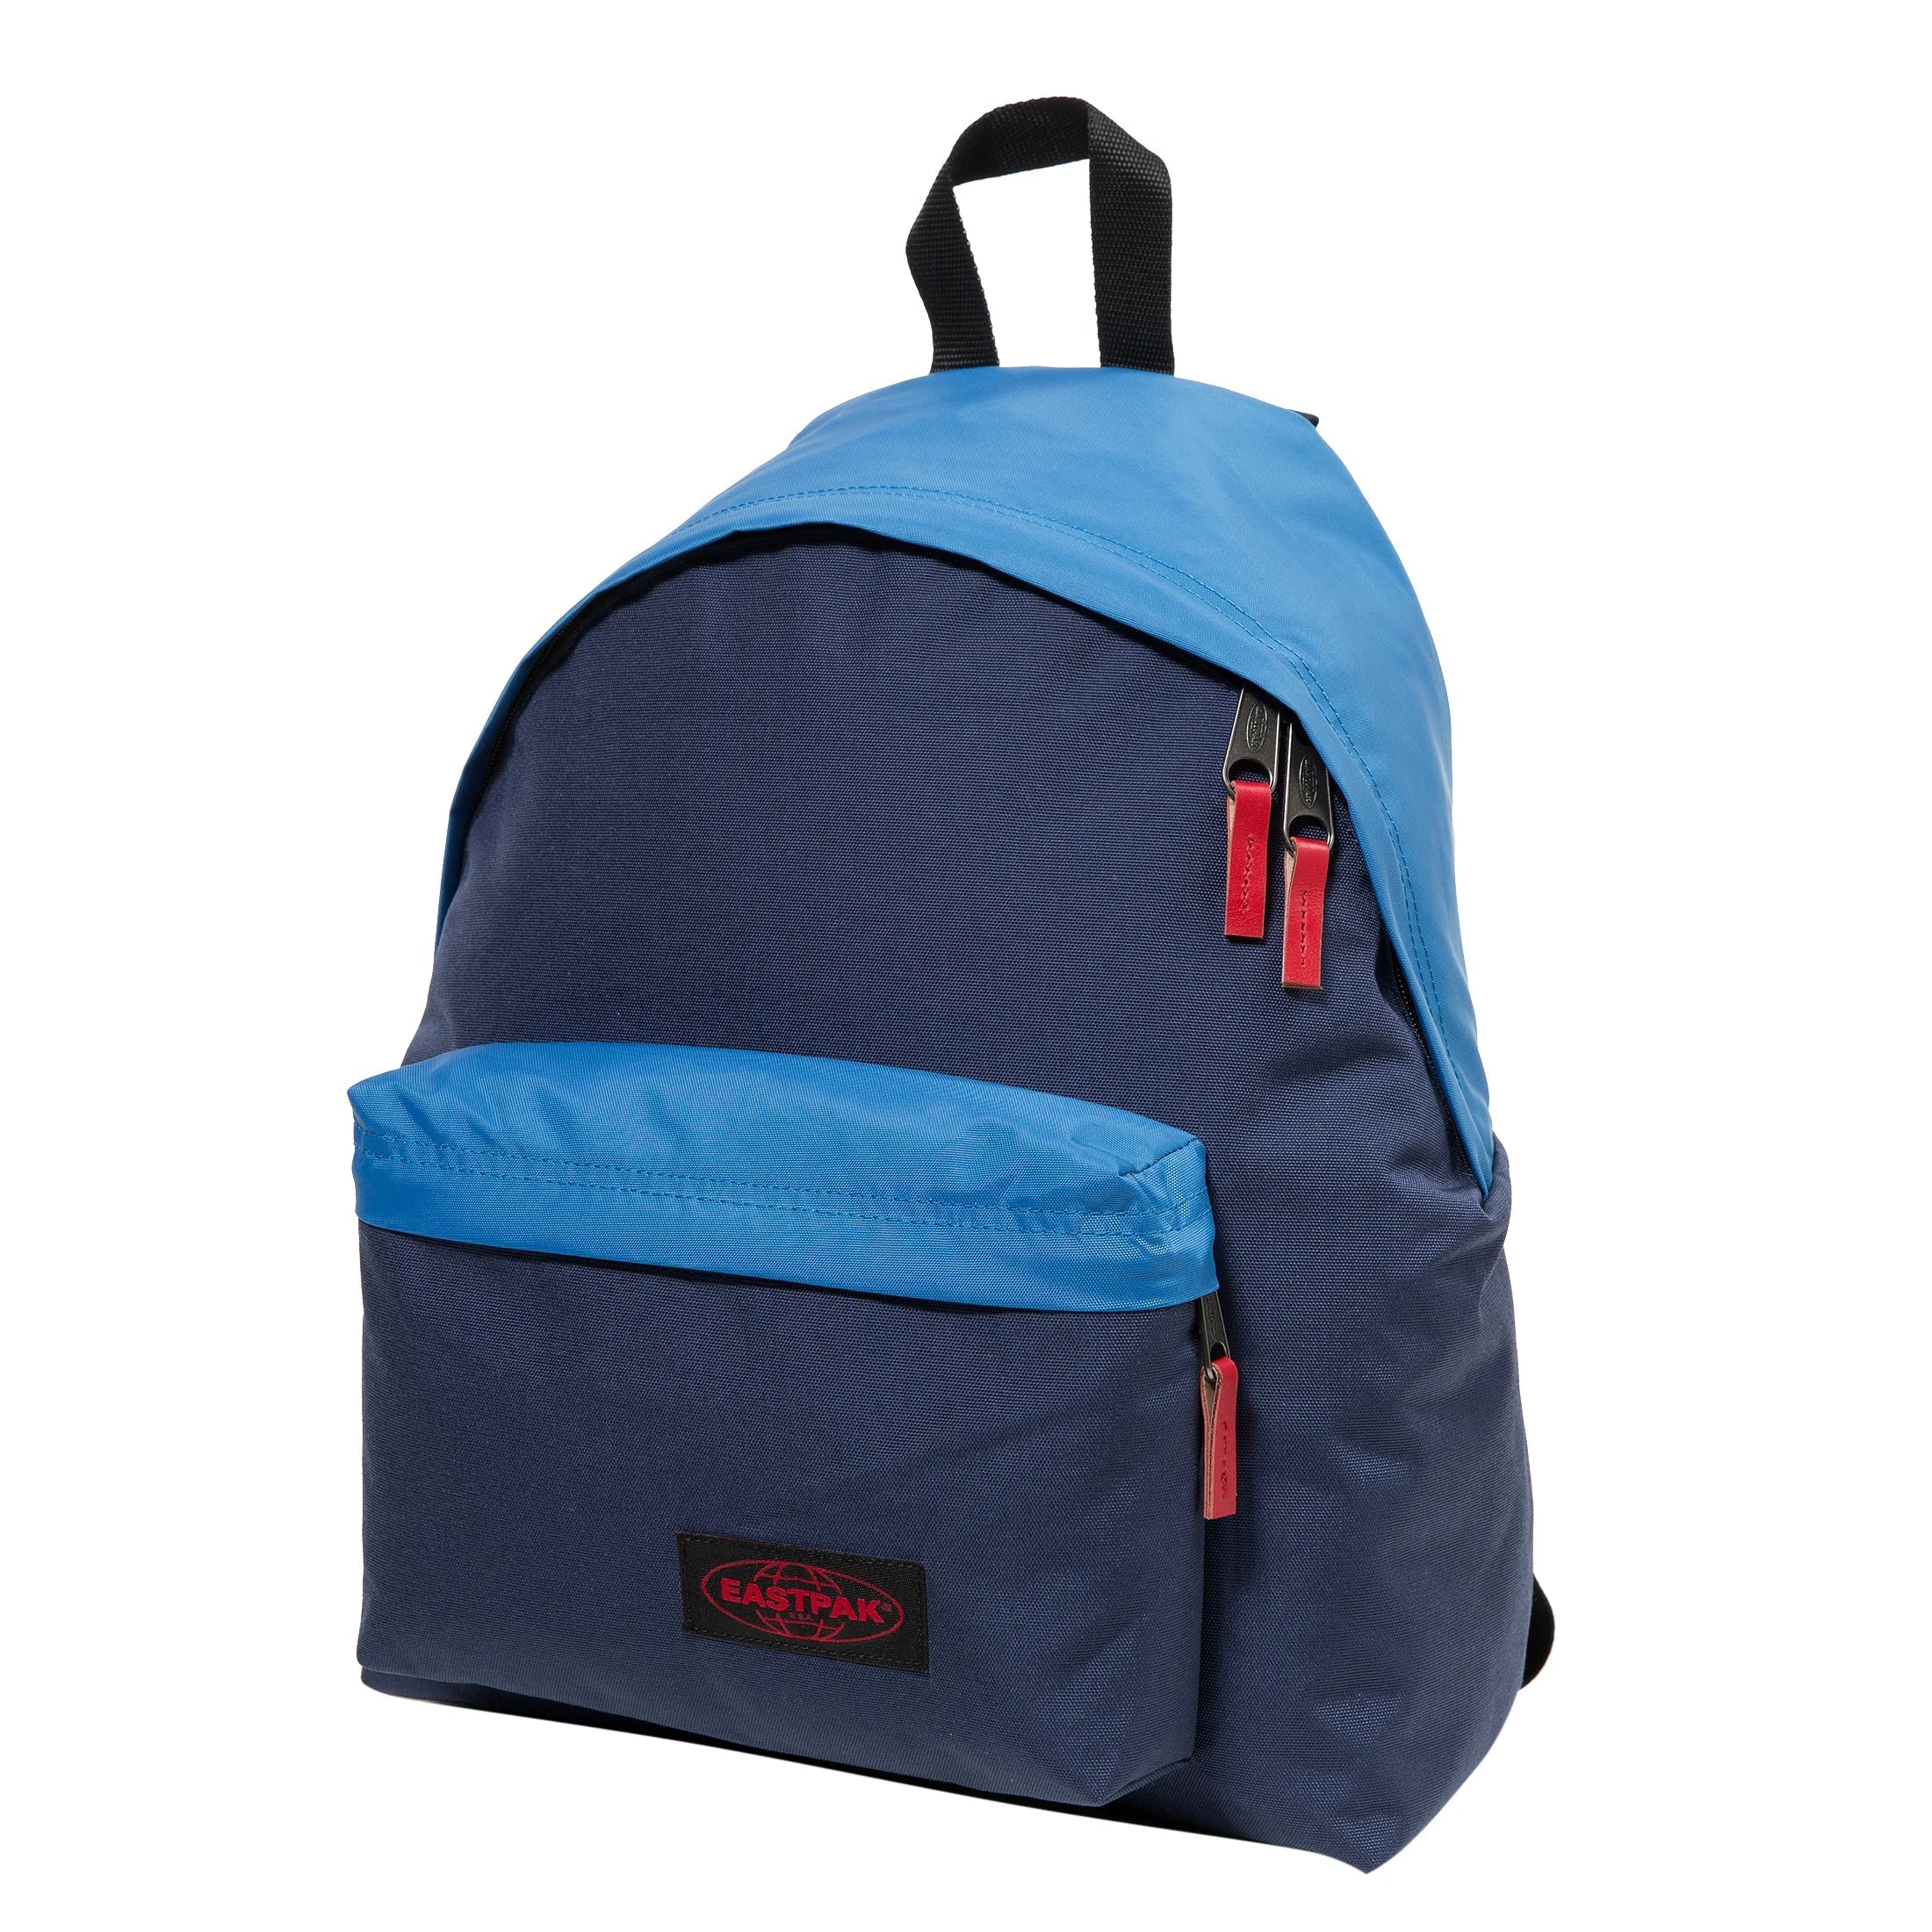 Eastpak Authentic Paded Pak'r sac à dos de loisirs 41 cm - combo bleu